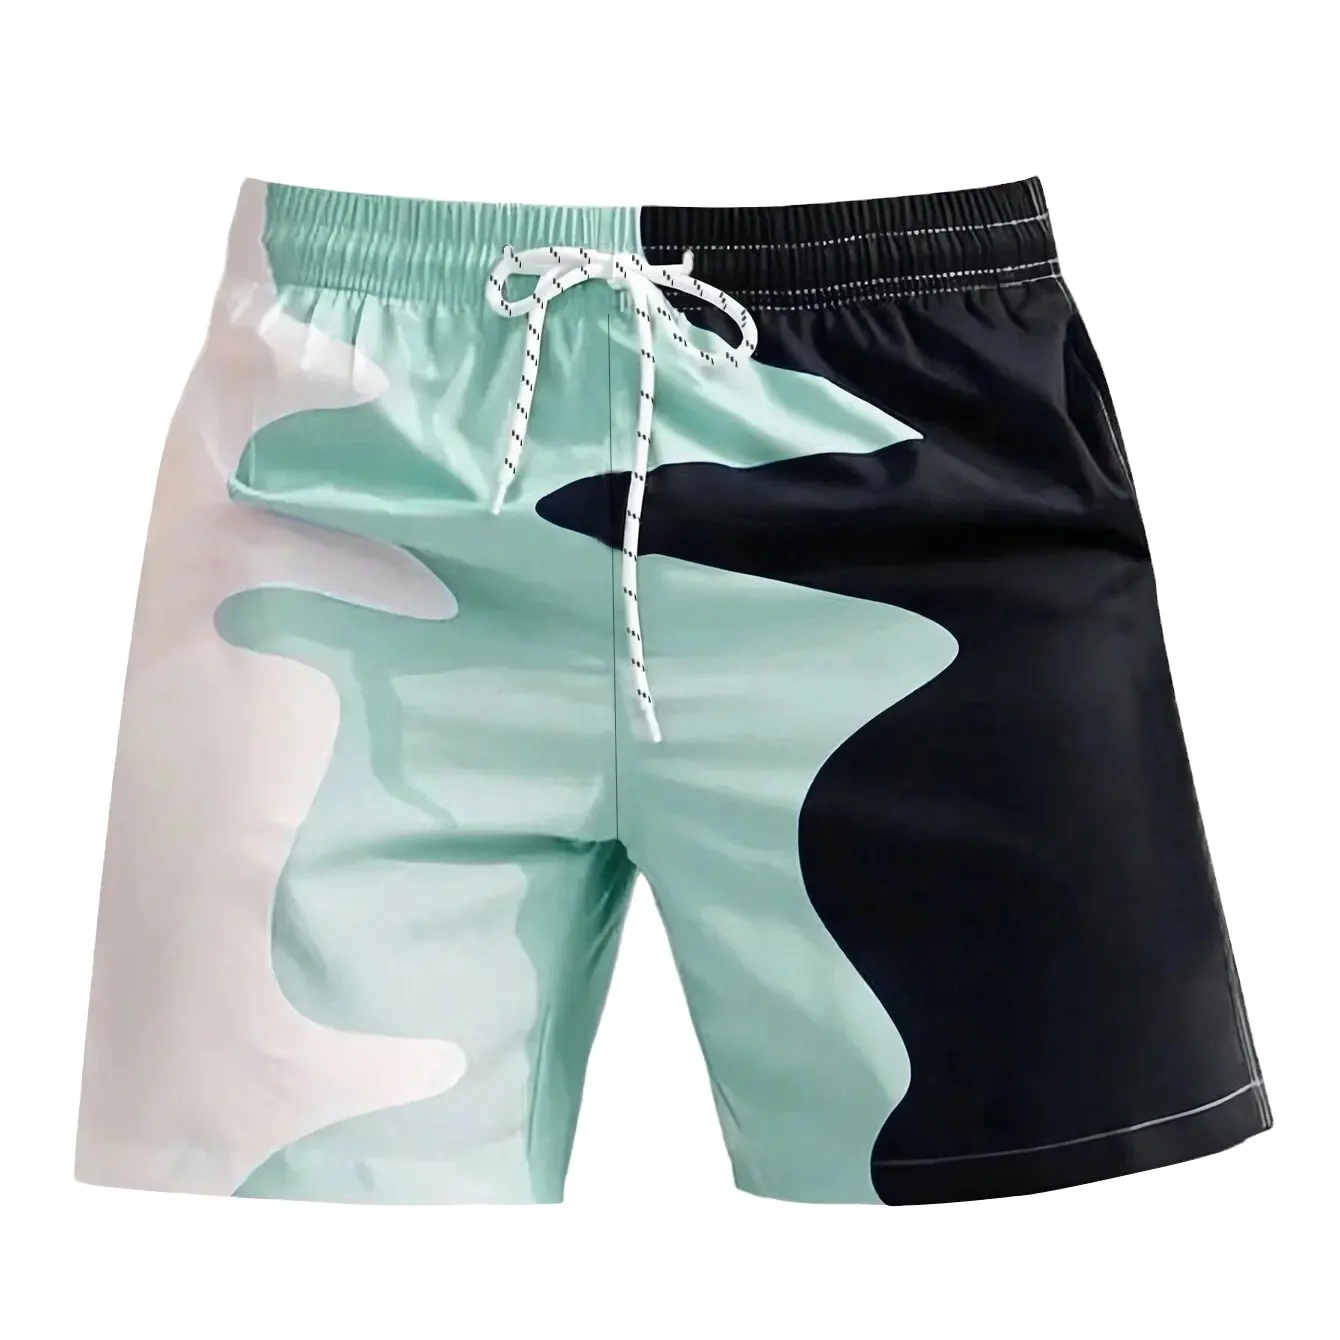 Shorts de sublimação para homens short com cordão e personalização completa com logotipo próprio da melhor qualidade